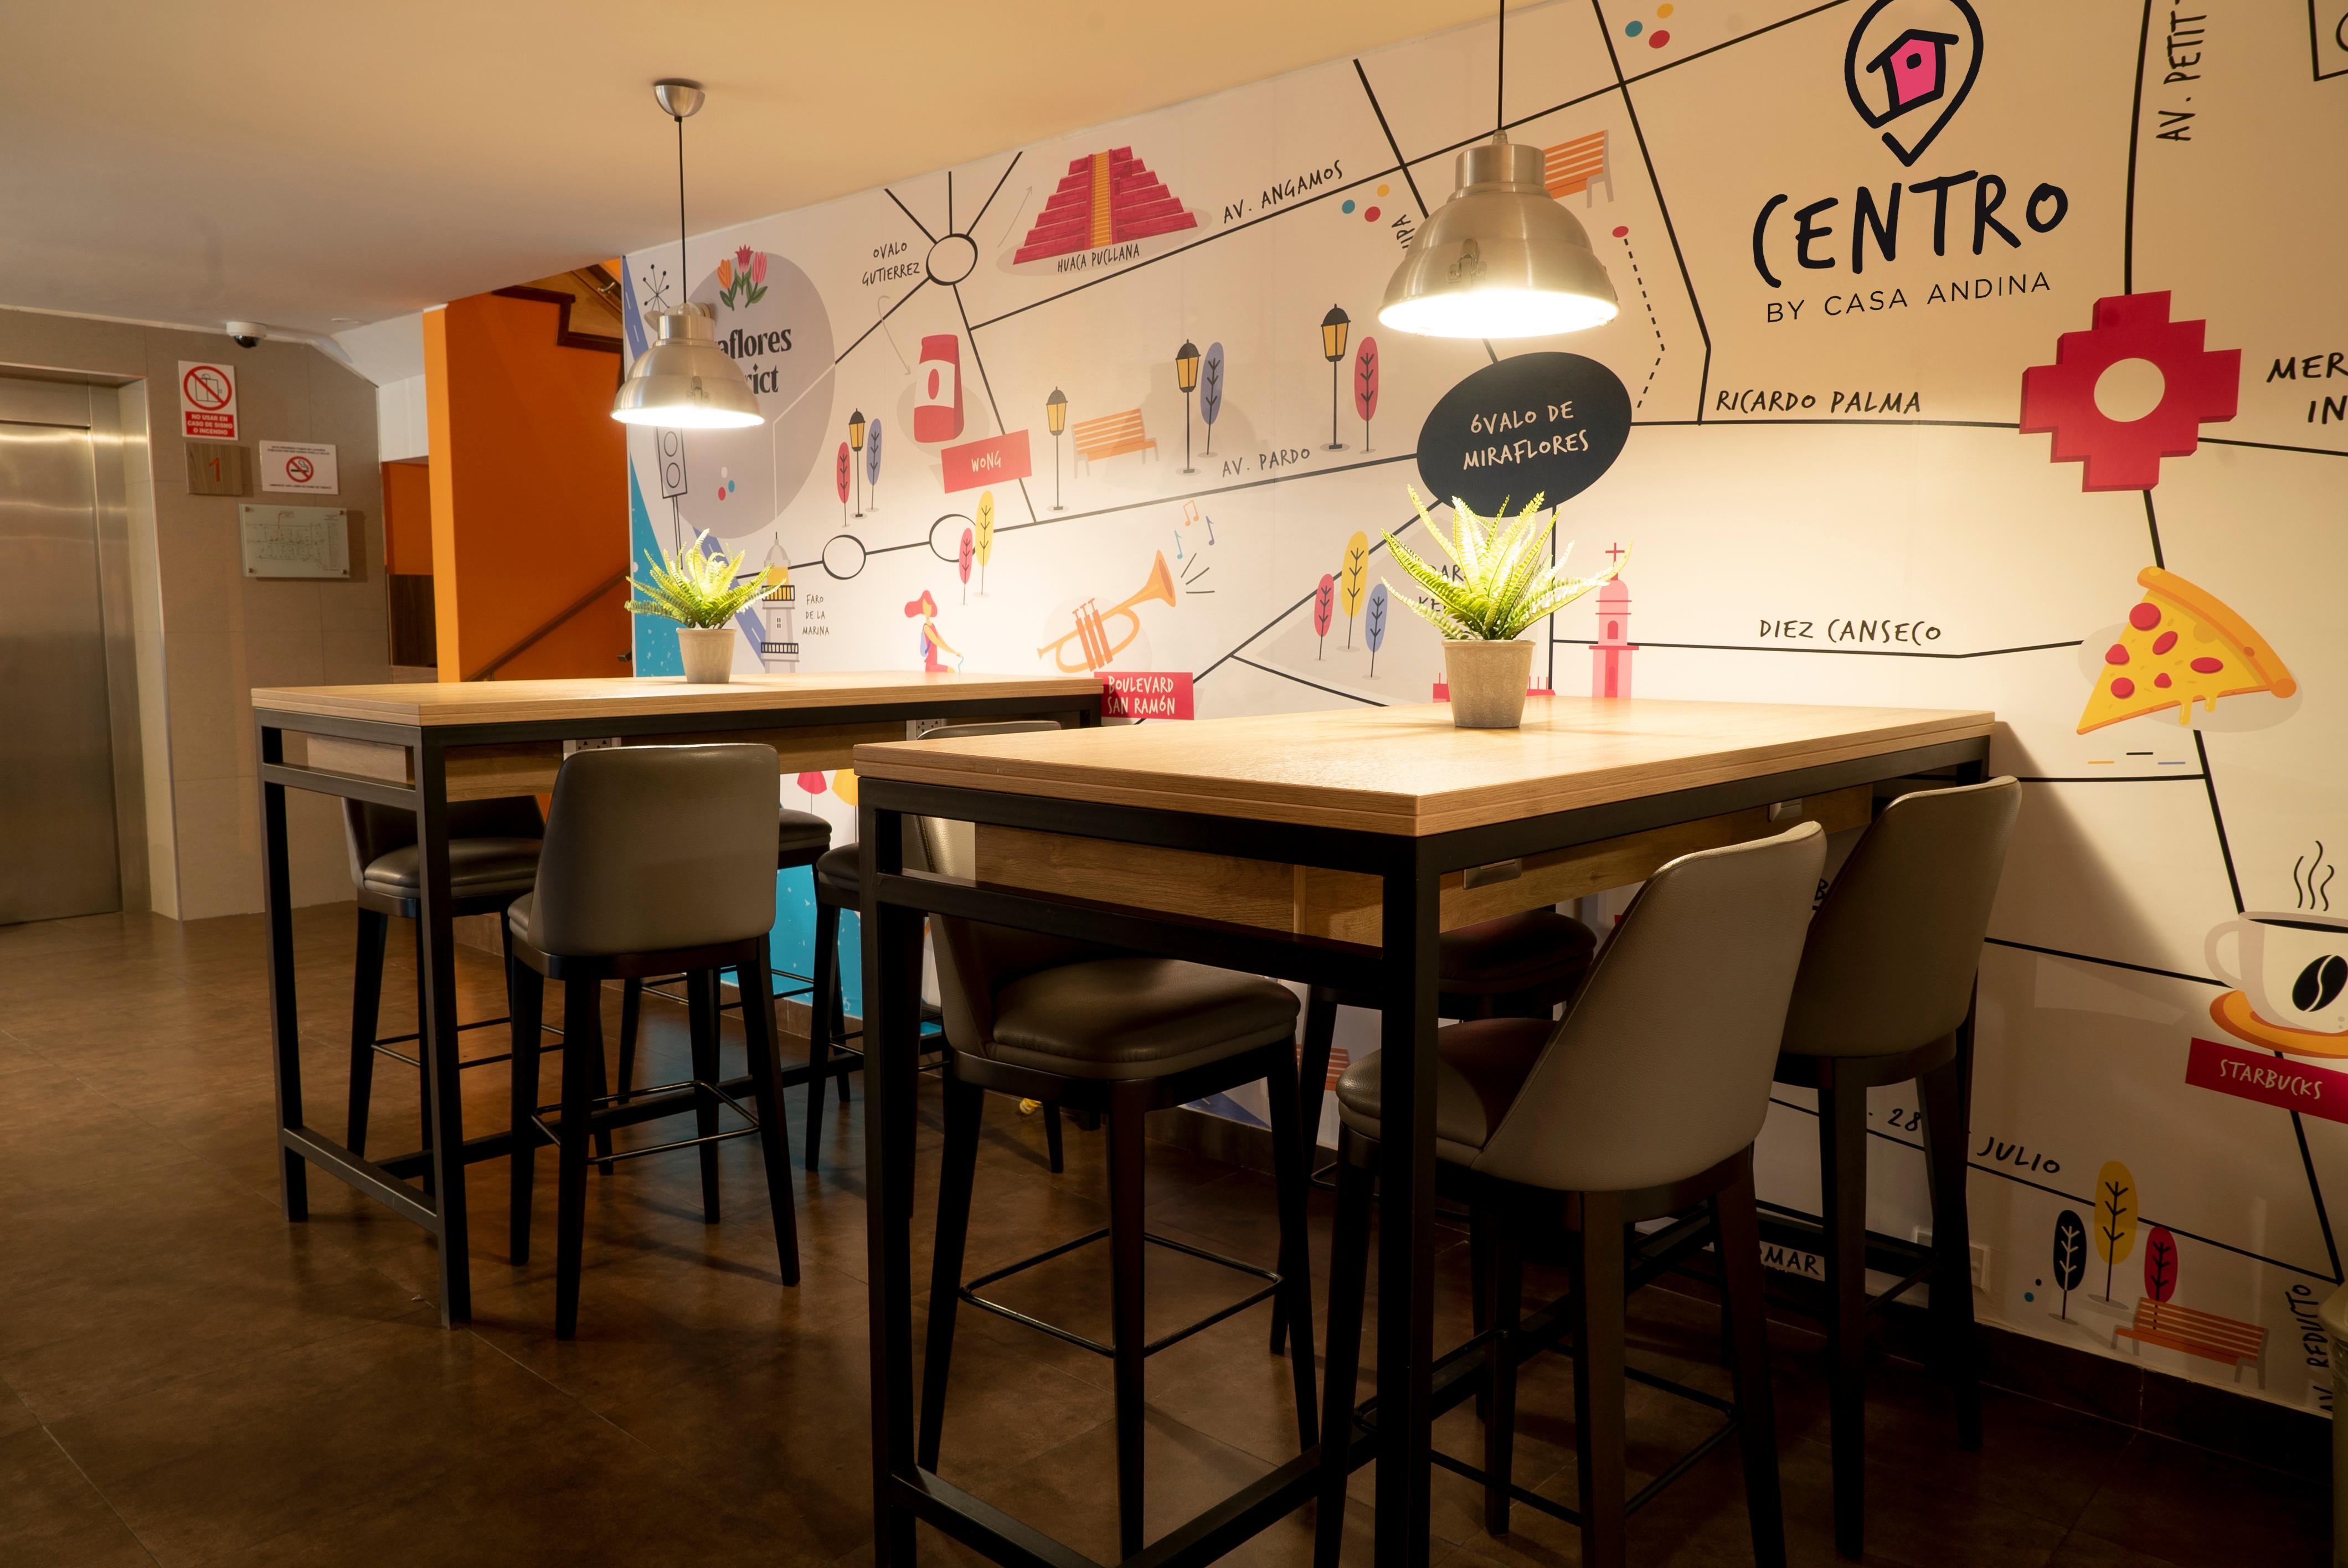 Restaurant Centro by Casa Andina